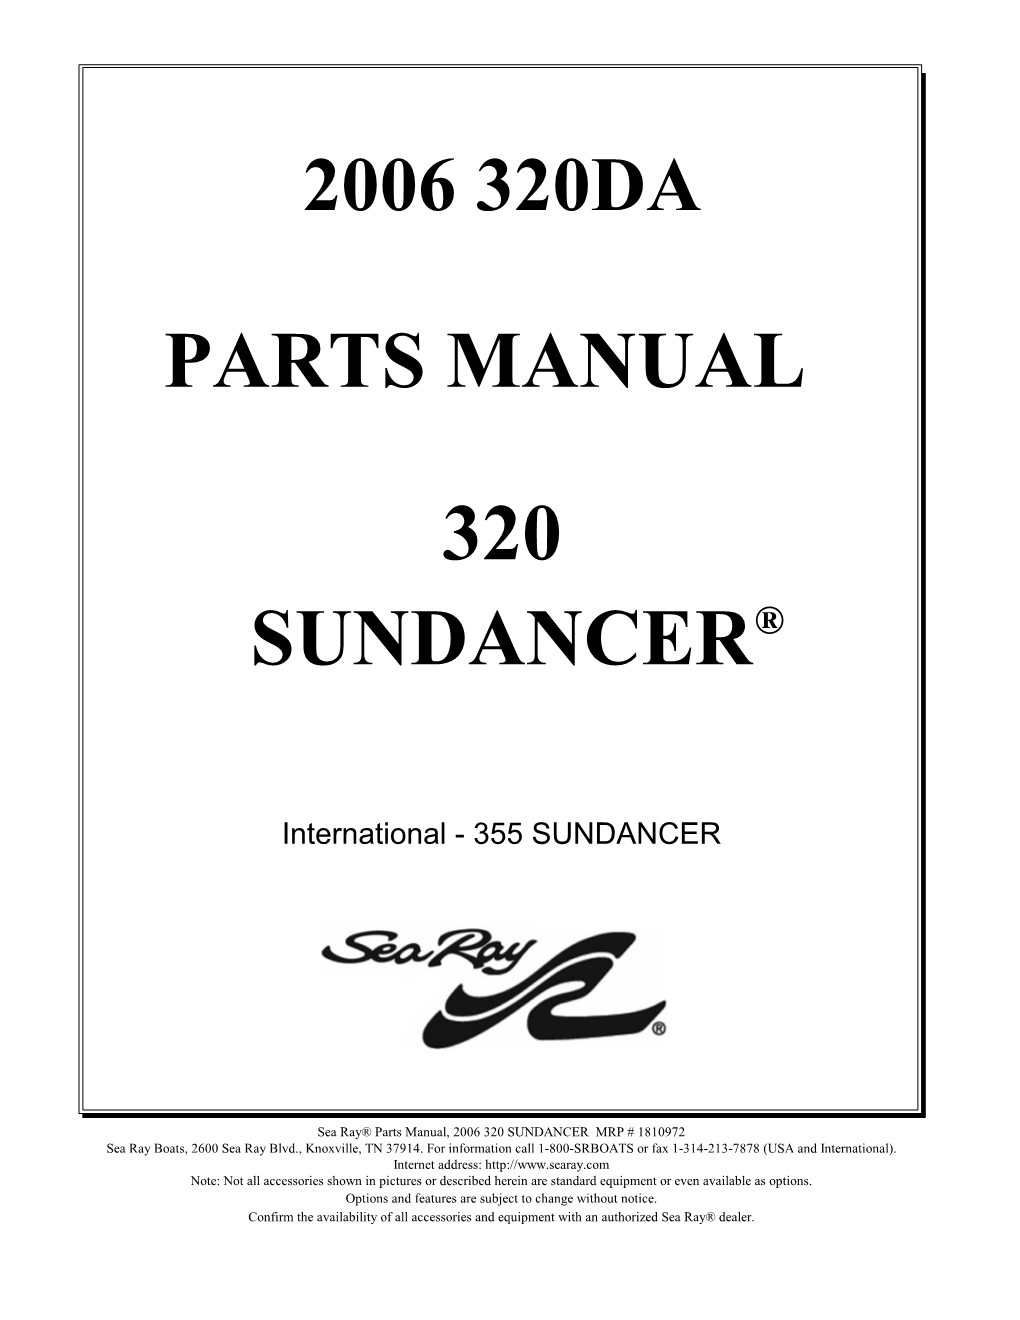 Parts Manual 2006 320Da Sundancer